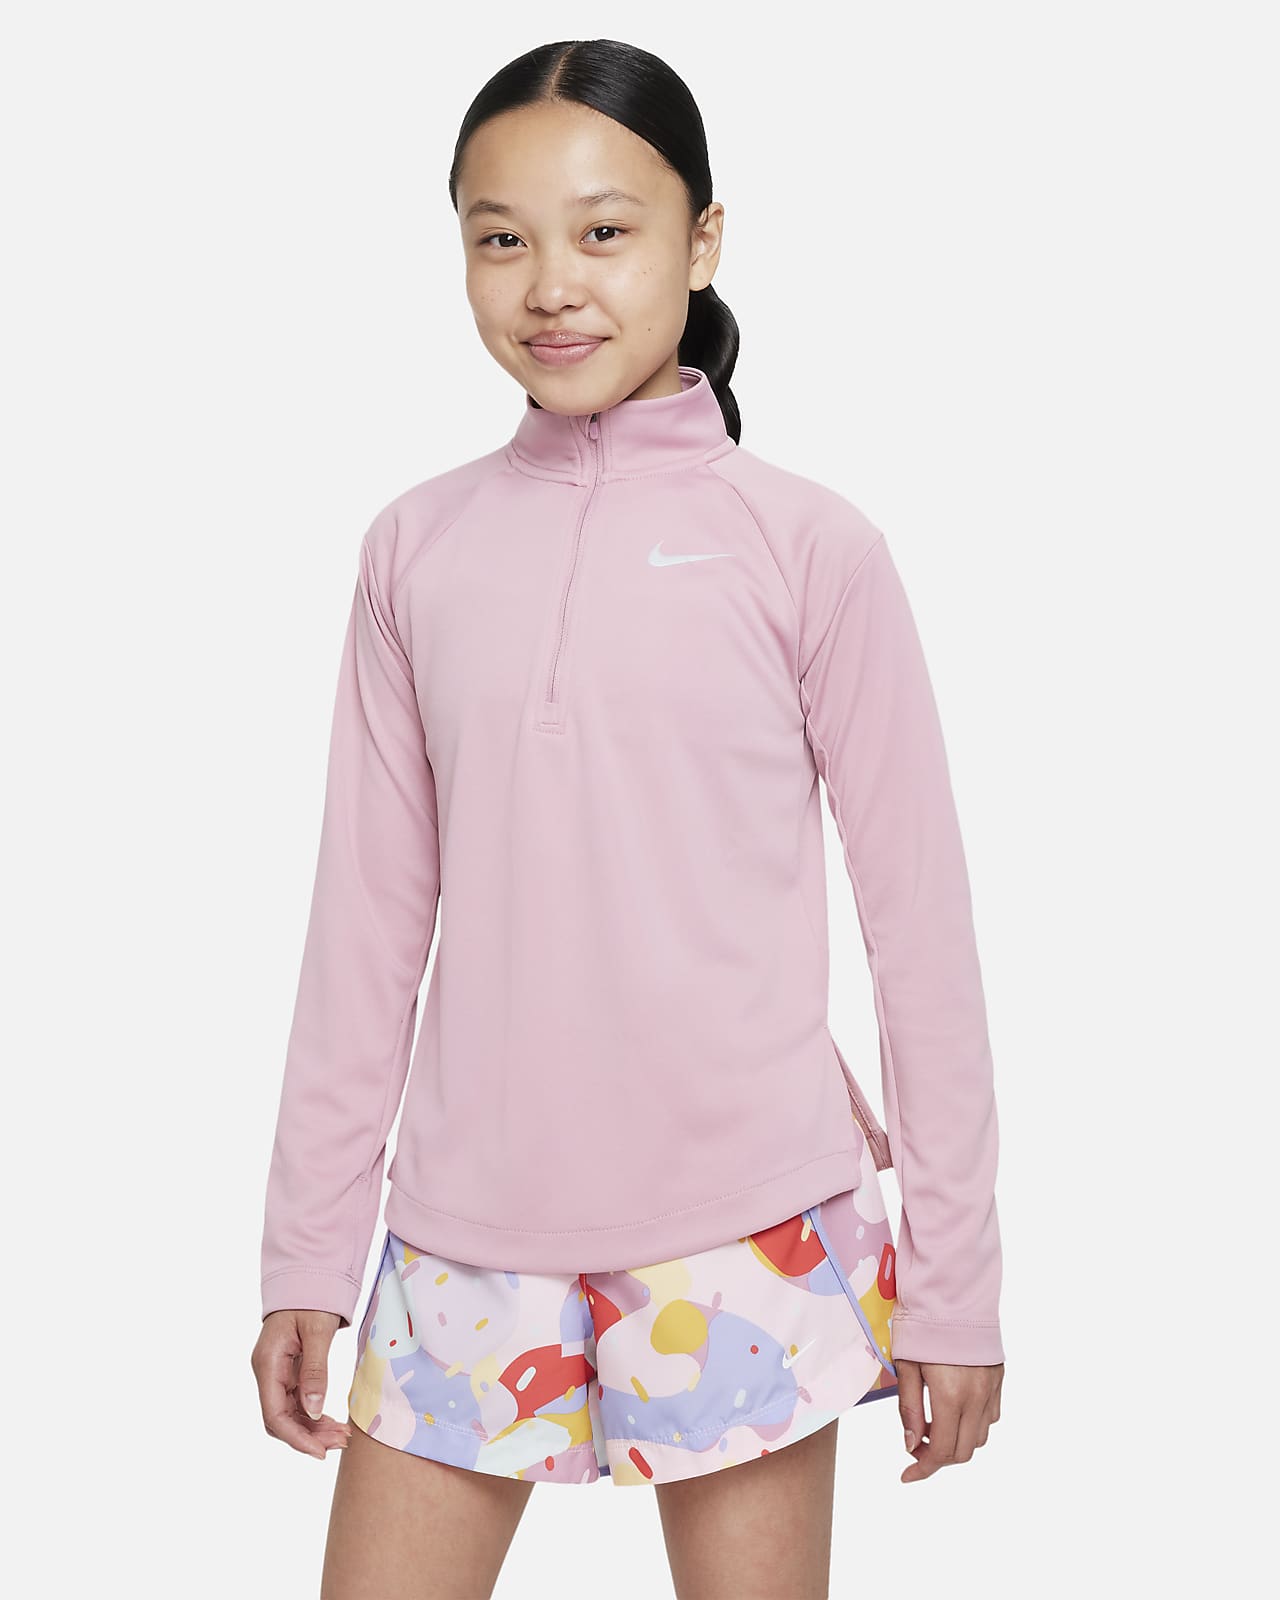 Nike Dri-FIT-langærmet løbeoverdel til større børn (piger)